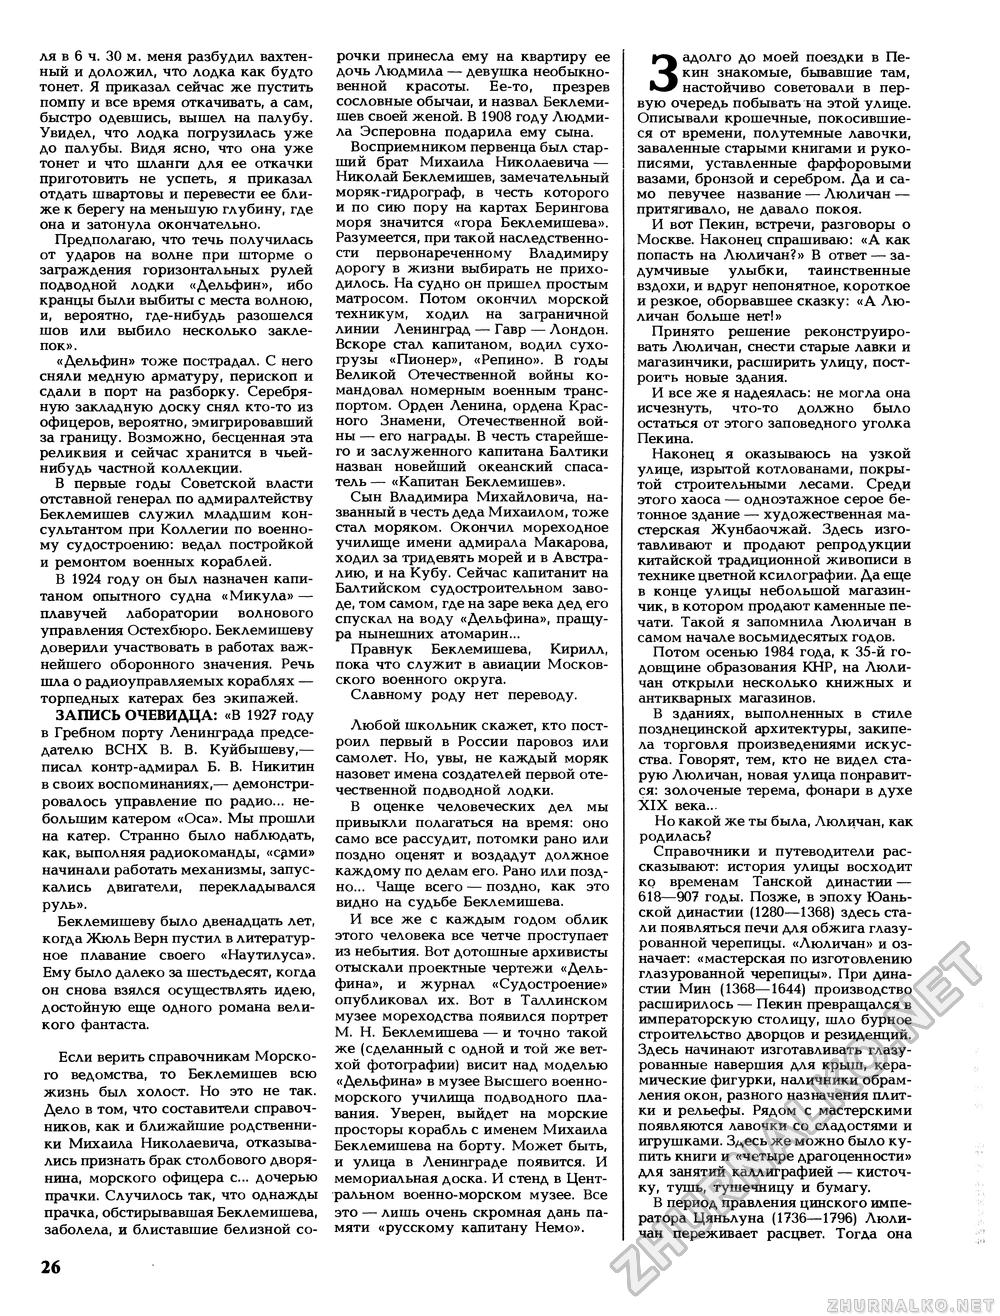 Вокруг света 1988-11, страница 28